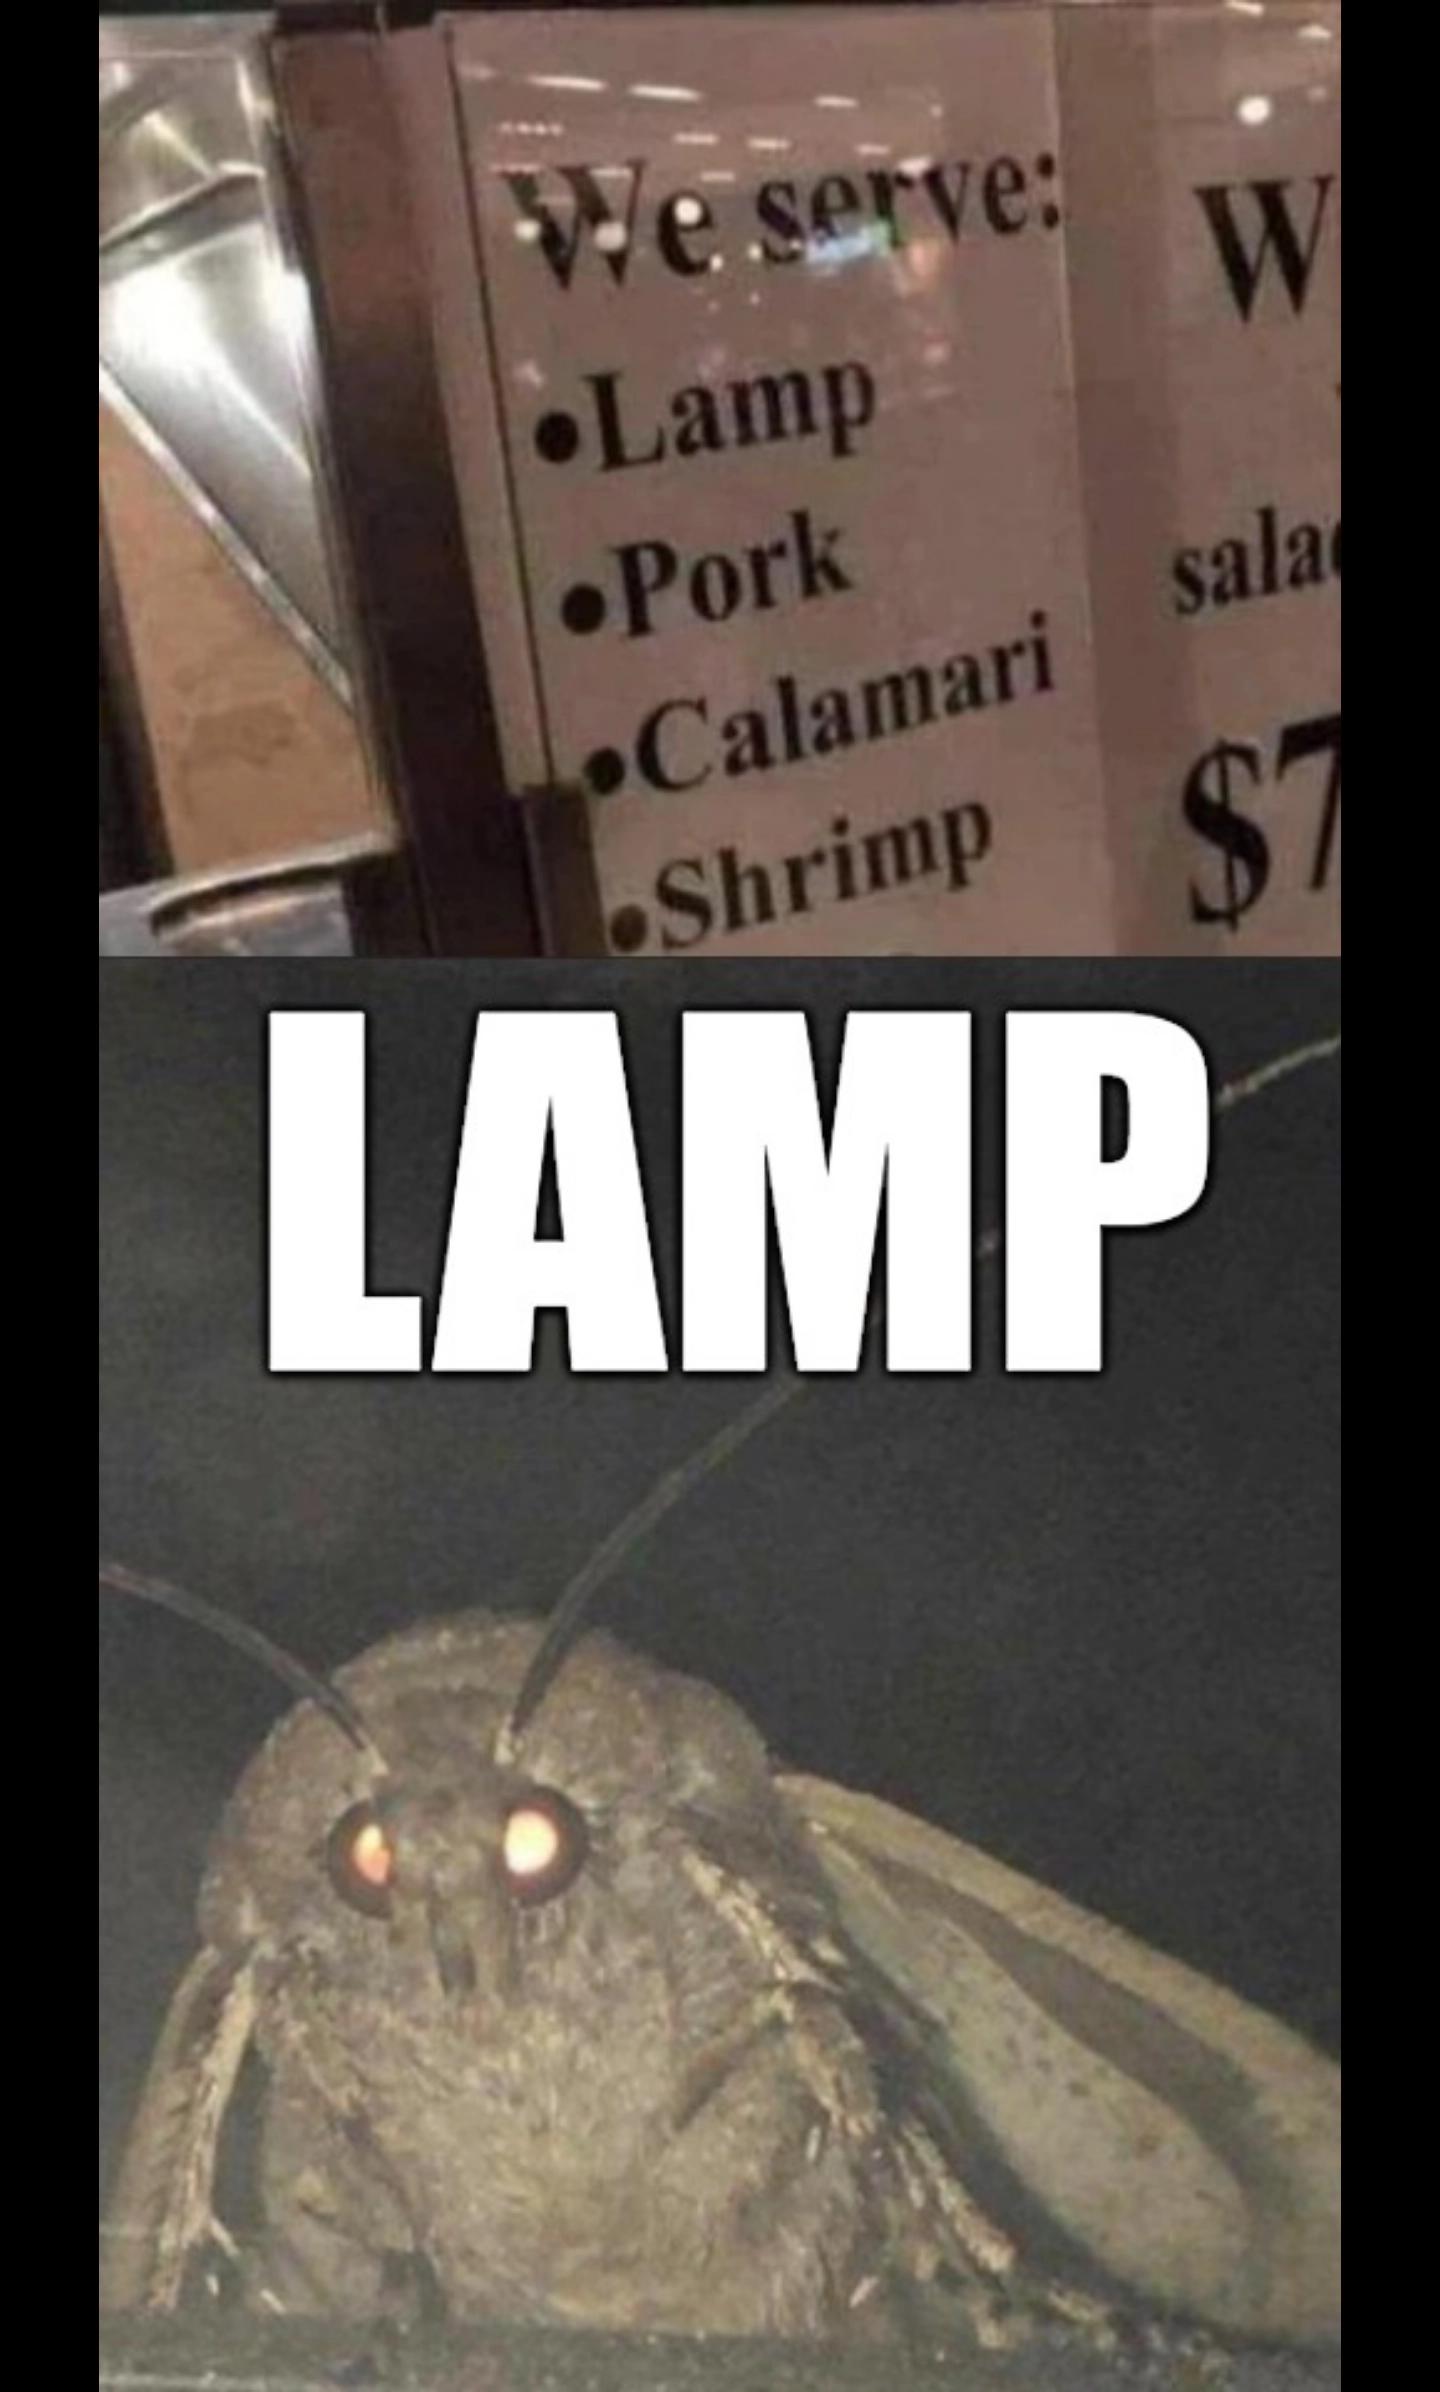 funny memes - moth memes - We serve Lamp Pork Calamari Shrimp Lamp W sala $7